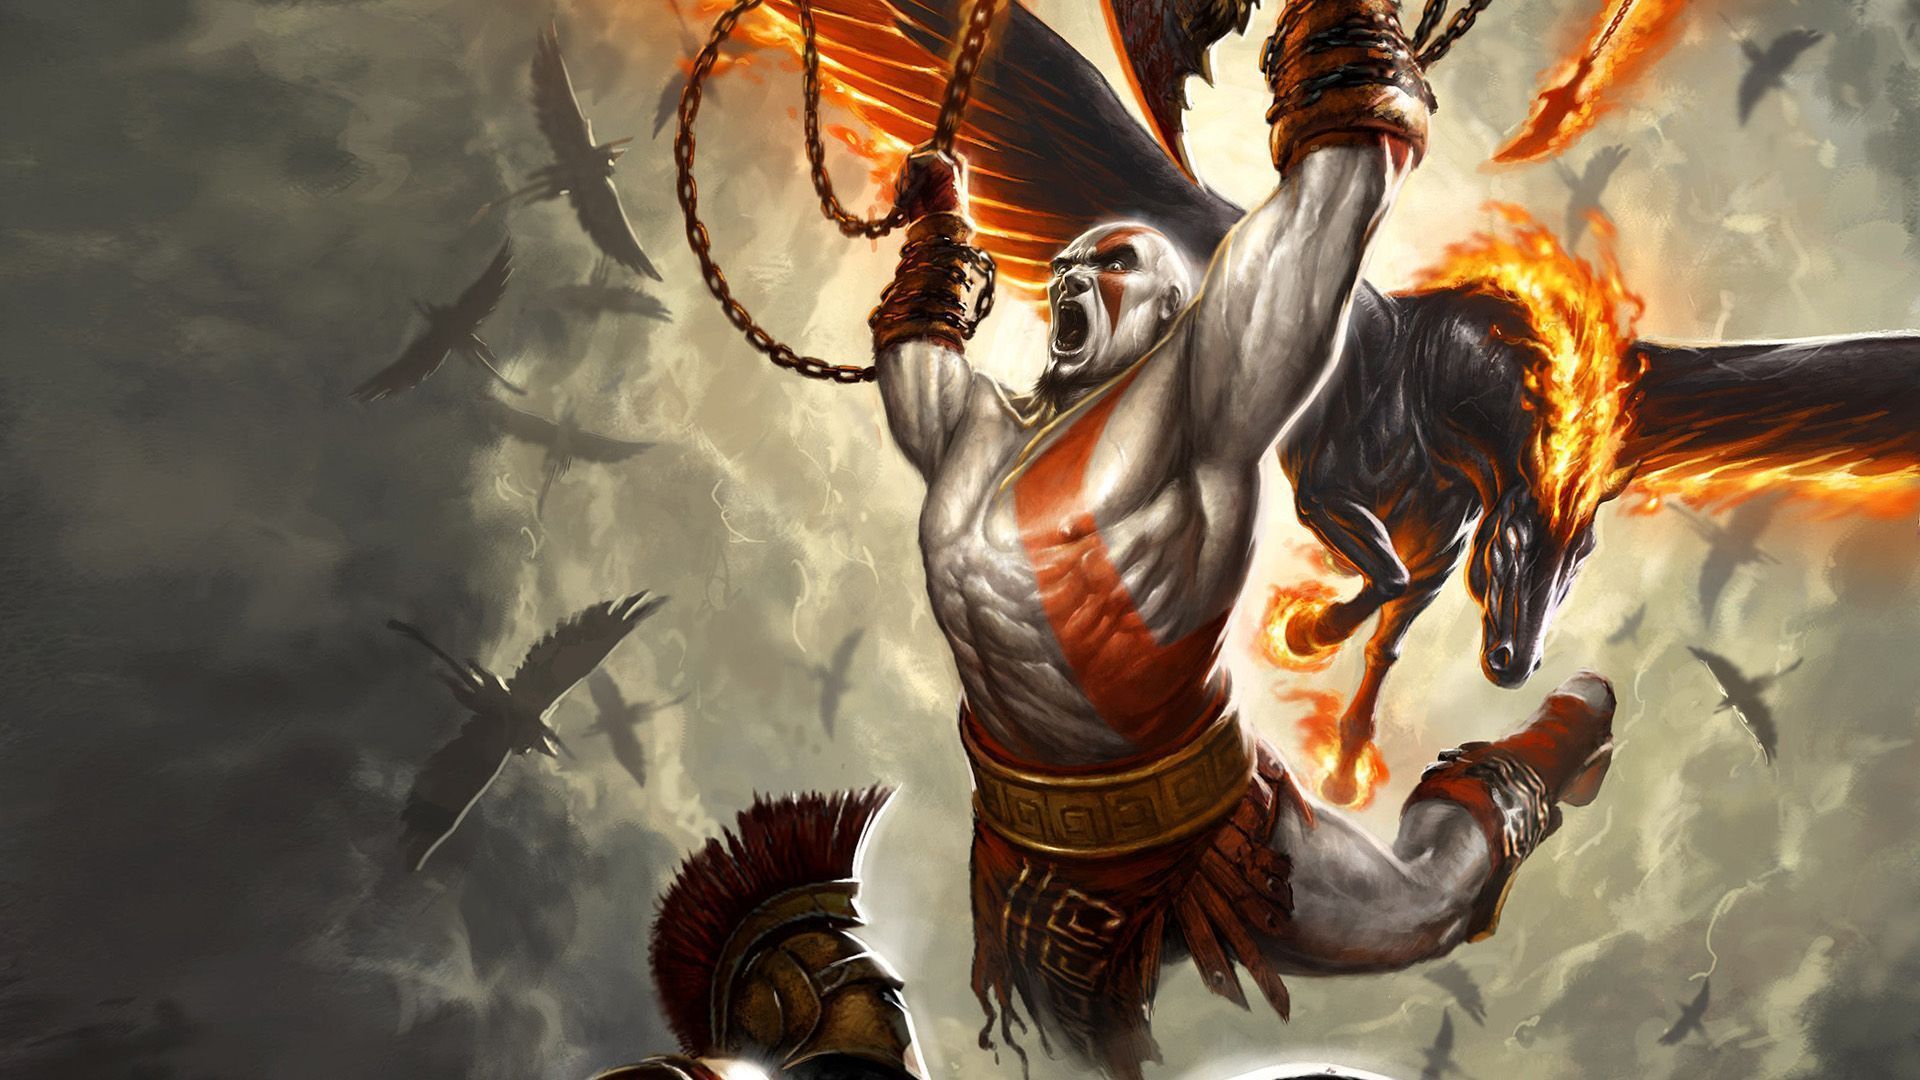 Kratos HD Wallpaper 1920x1080 ID29458